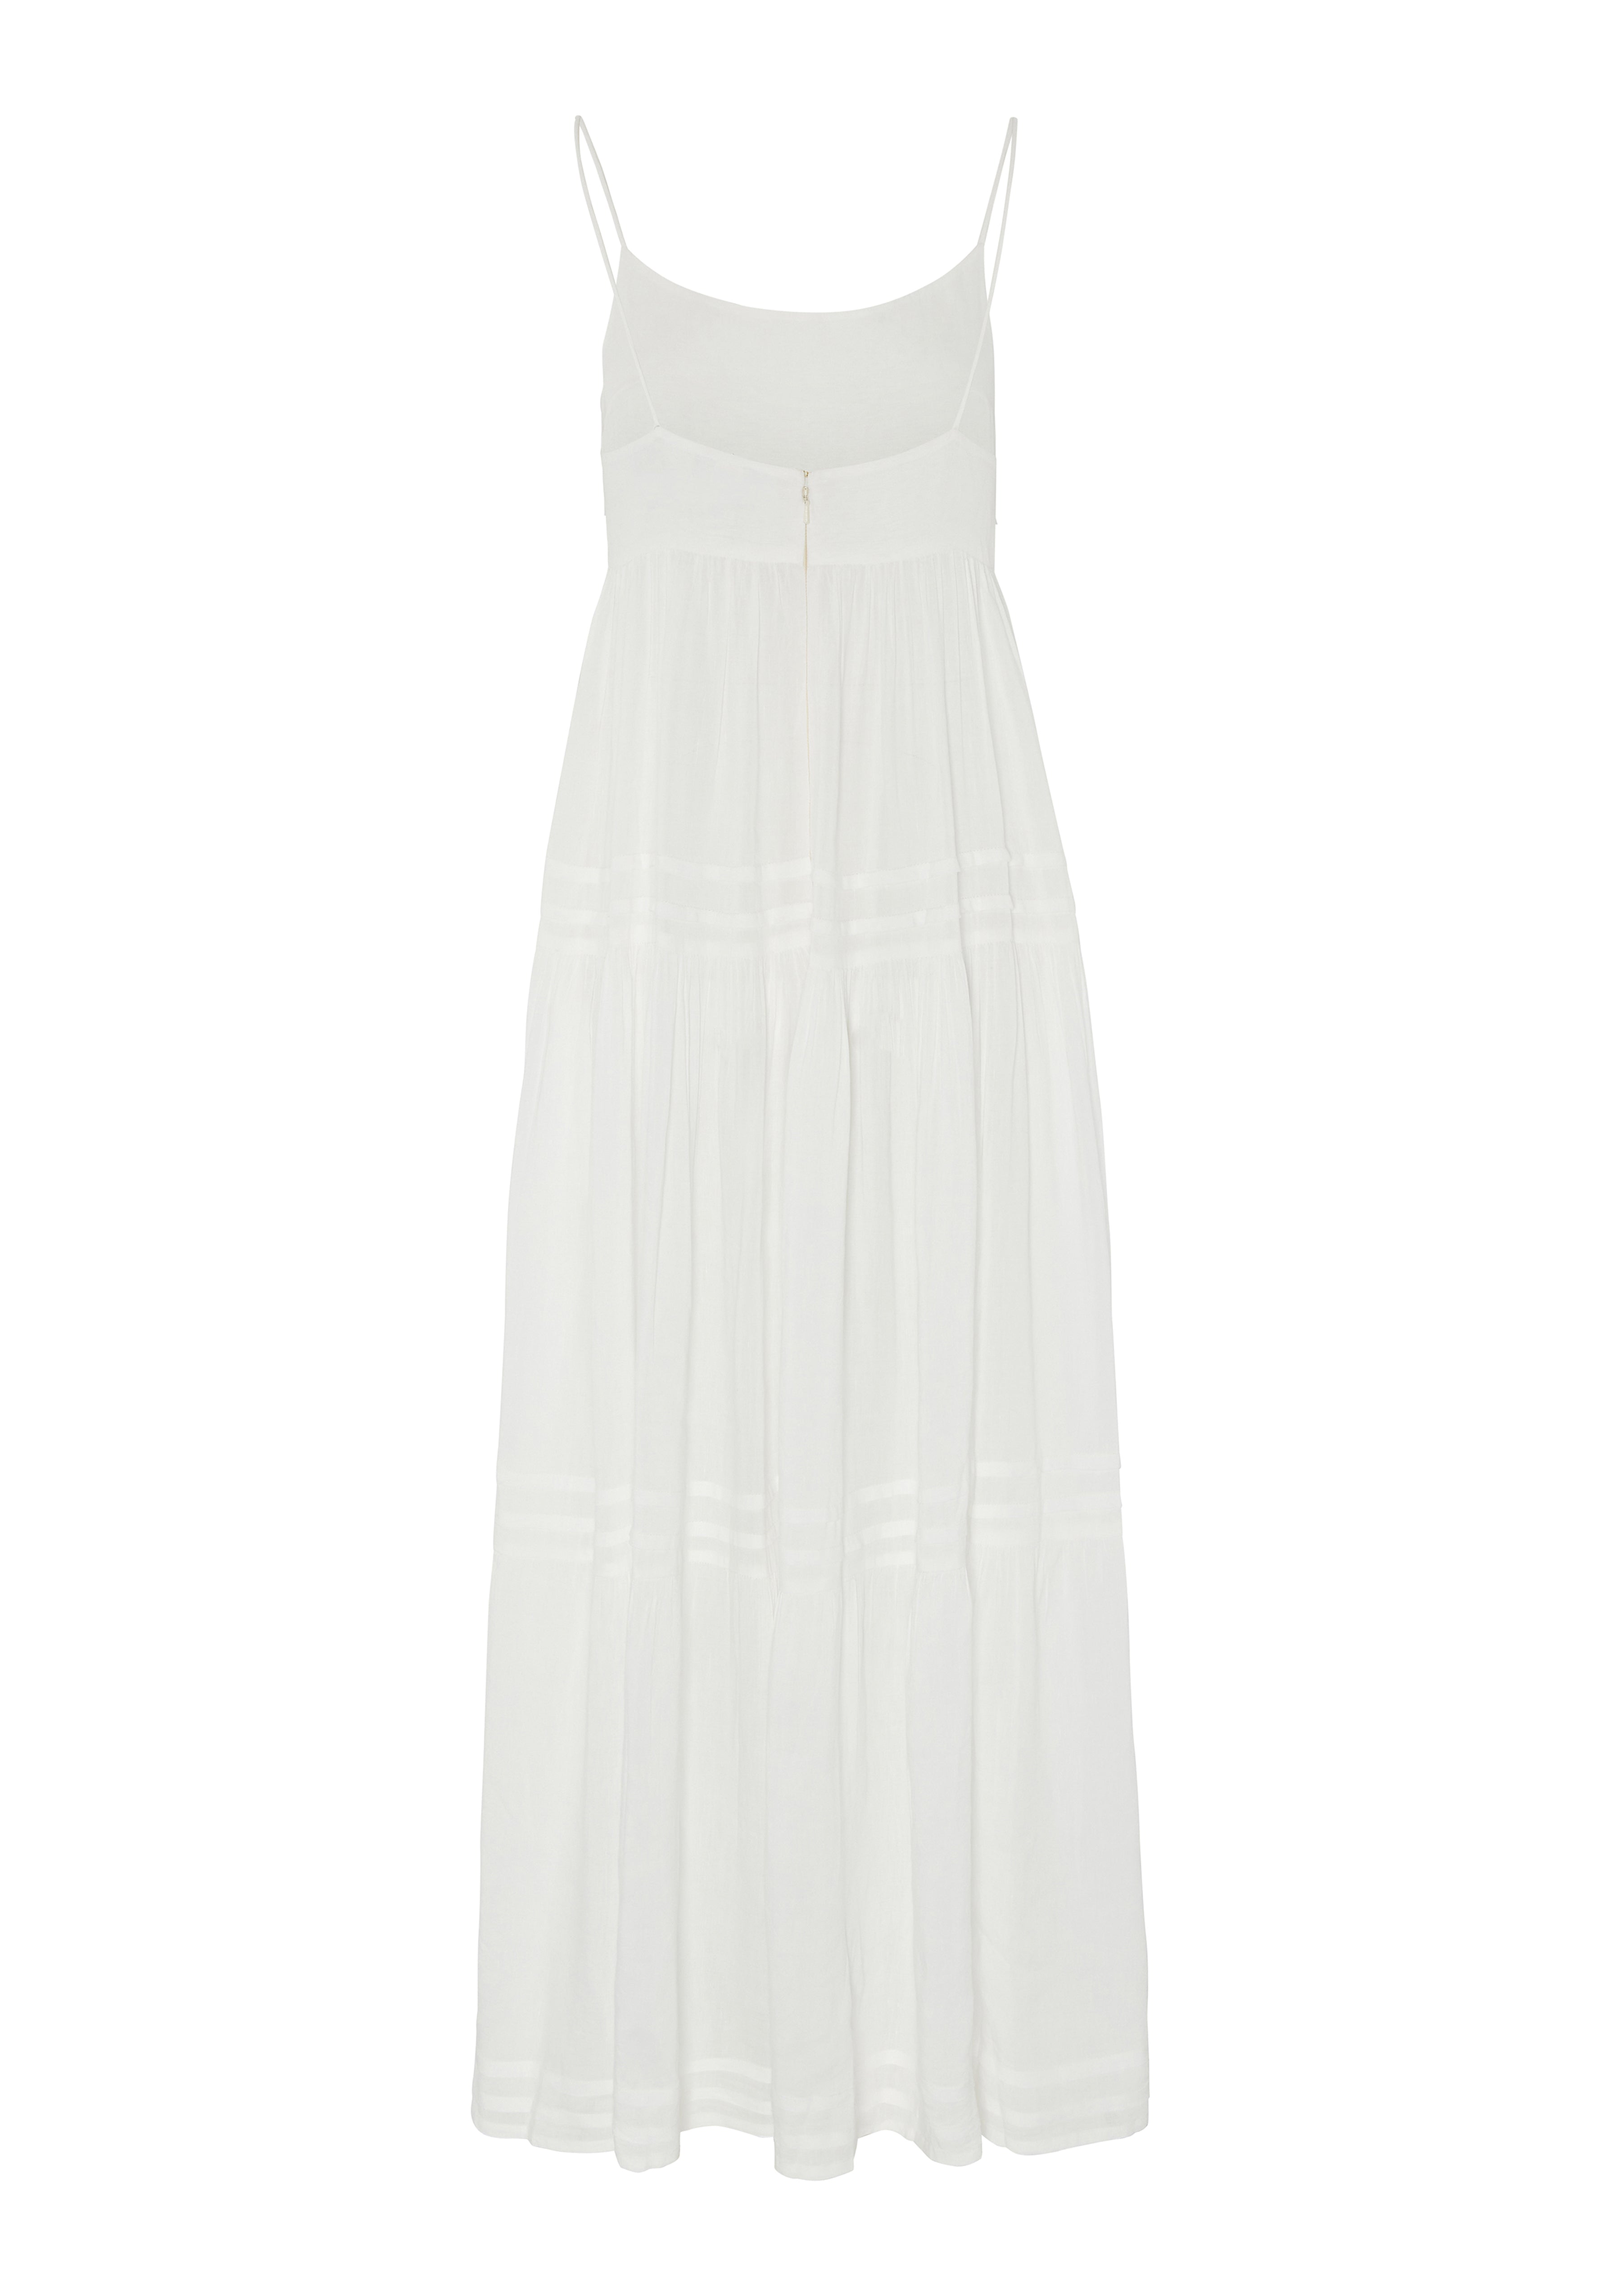 EVARAE OLIVIA DRESS IN LINEN - SOFT WHITE